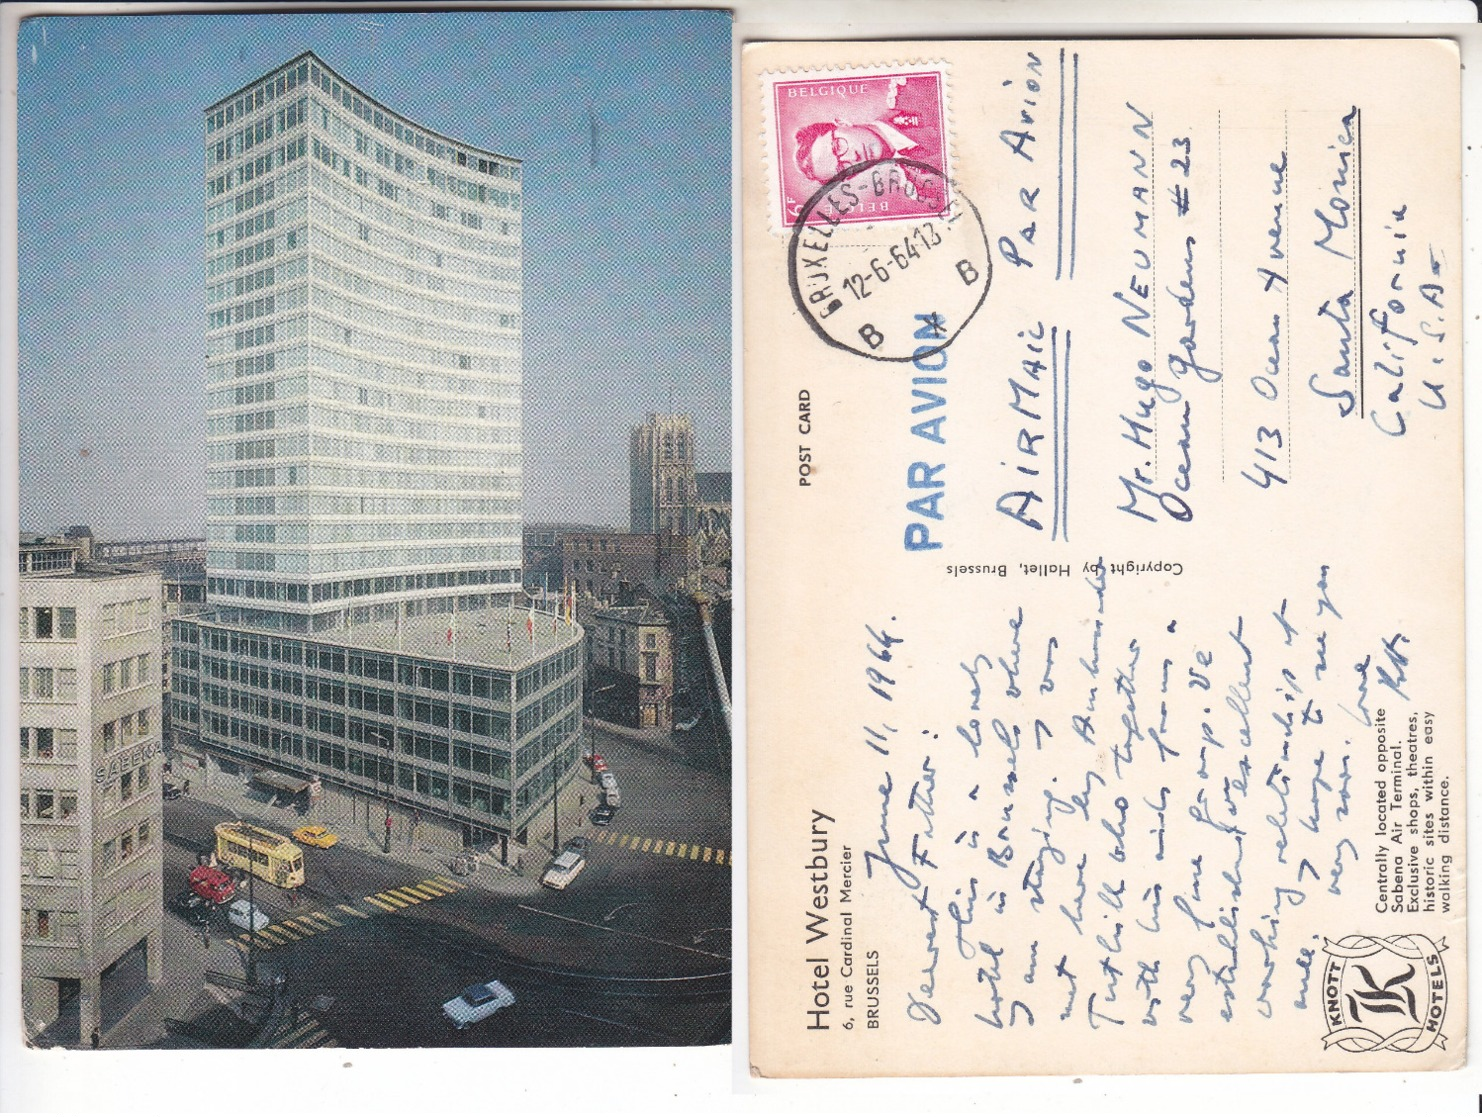 SP- BELGIQUE - BRUSSELS - BRUXELLES - HOTEL WESTBURY- Tram Jaune - Timbre - Cachet - 1964 - Cafés, Hotels, Restaurants